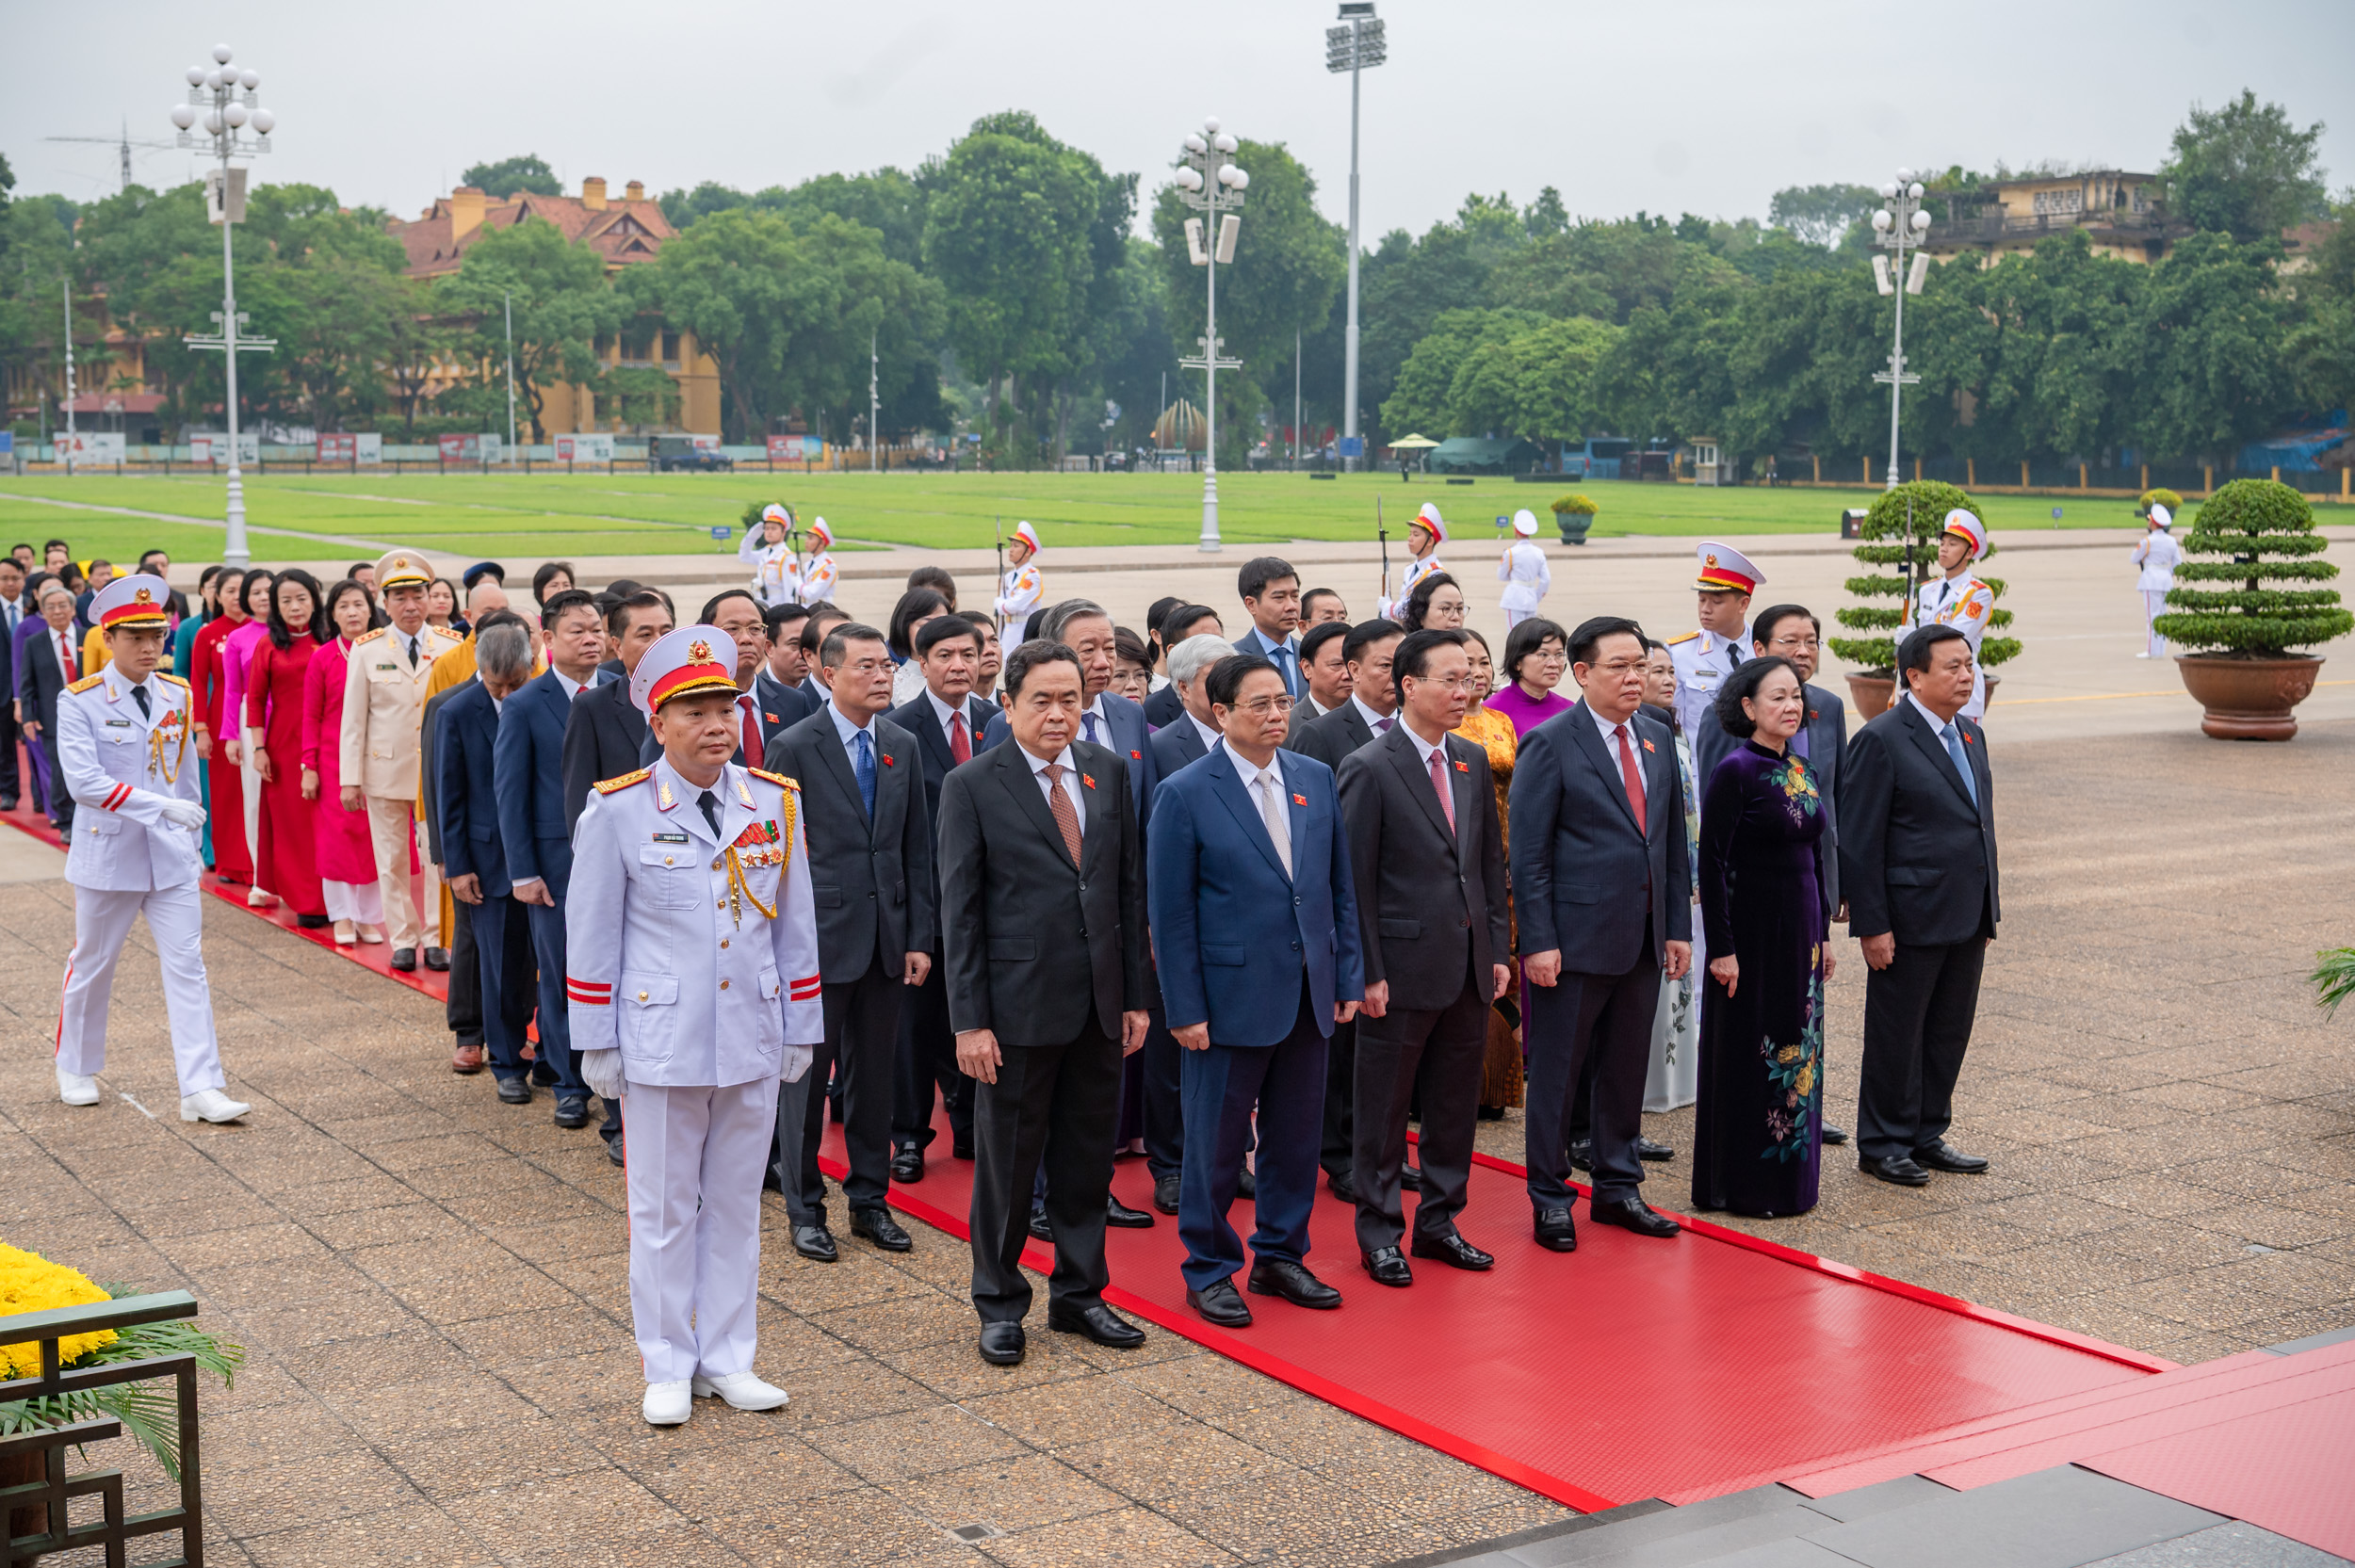 Lãnh đạo Đảng, Nhà nước cùng các đại biểu Quốc hội kính cẩn tỏ lòng biết ơn vô hạn, lòng thành kính tưởng nhớ công lao to lớn của Chủ tịch Hồ Chí Minh